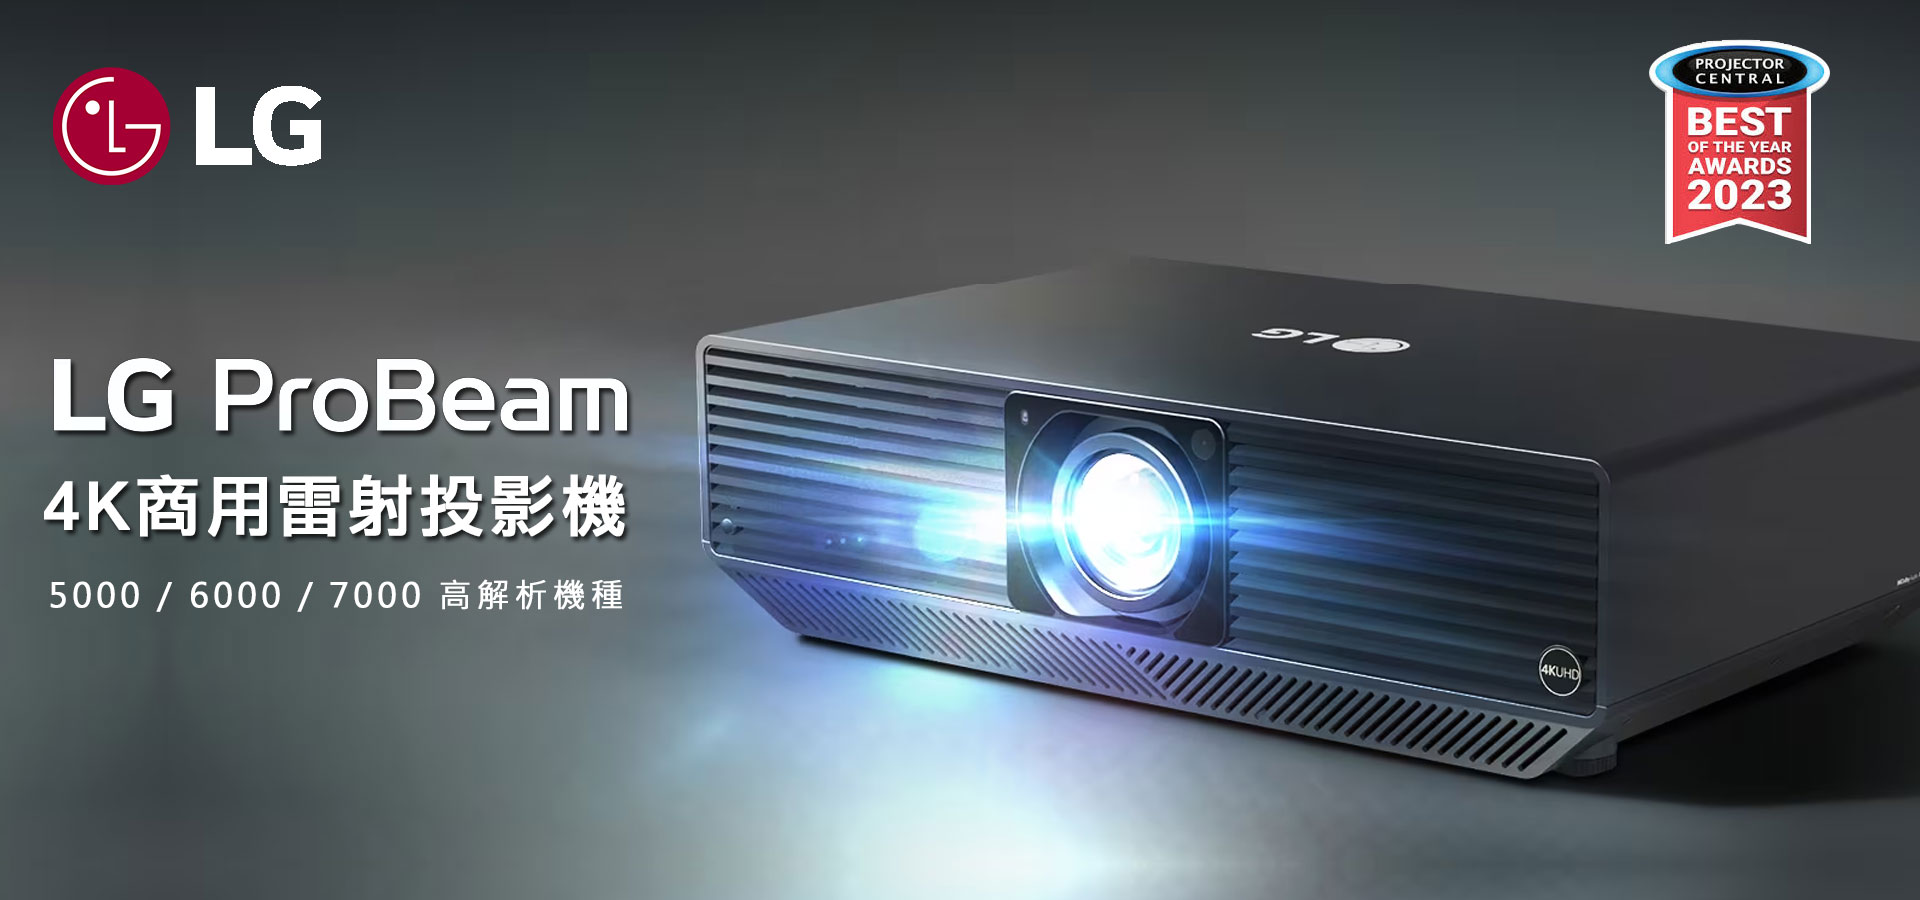 LG Probeam 投影機